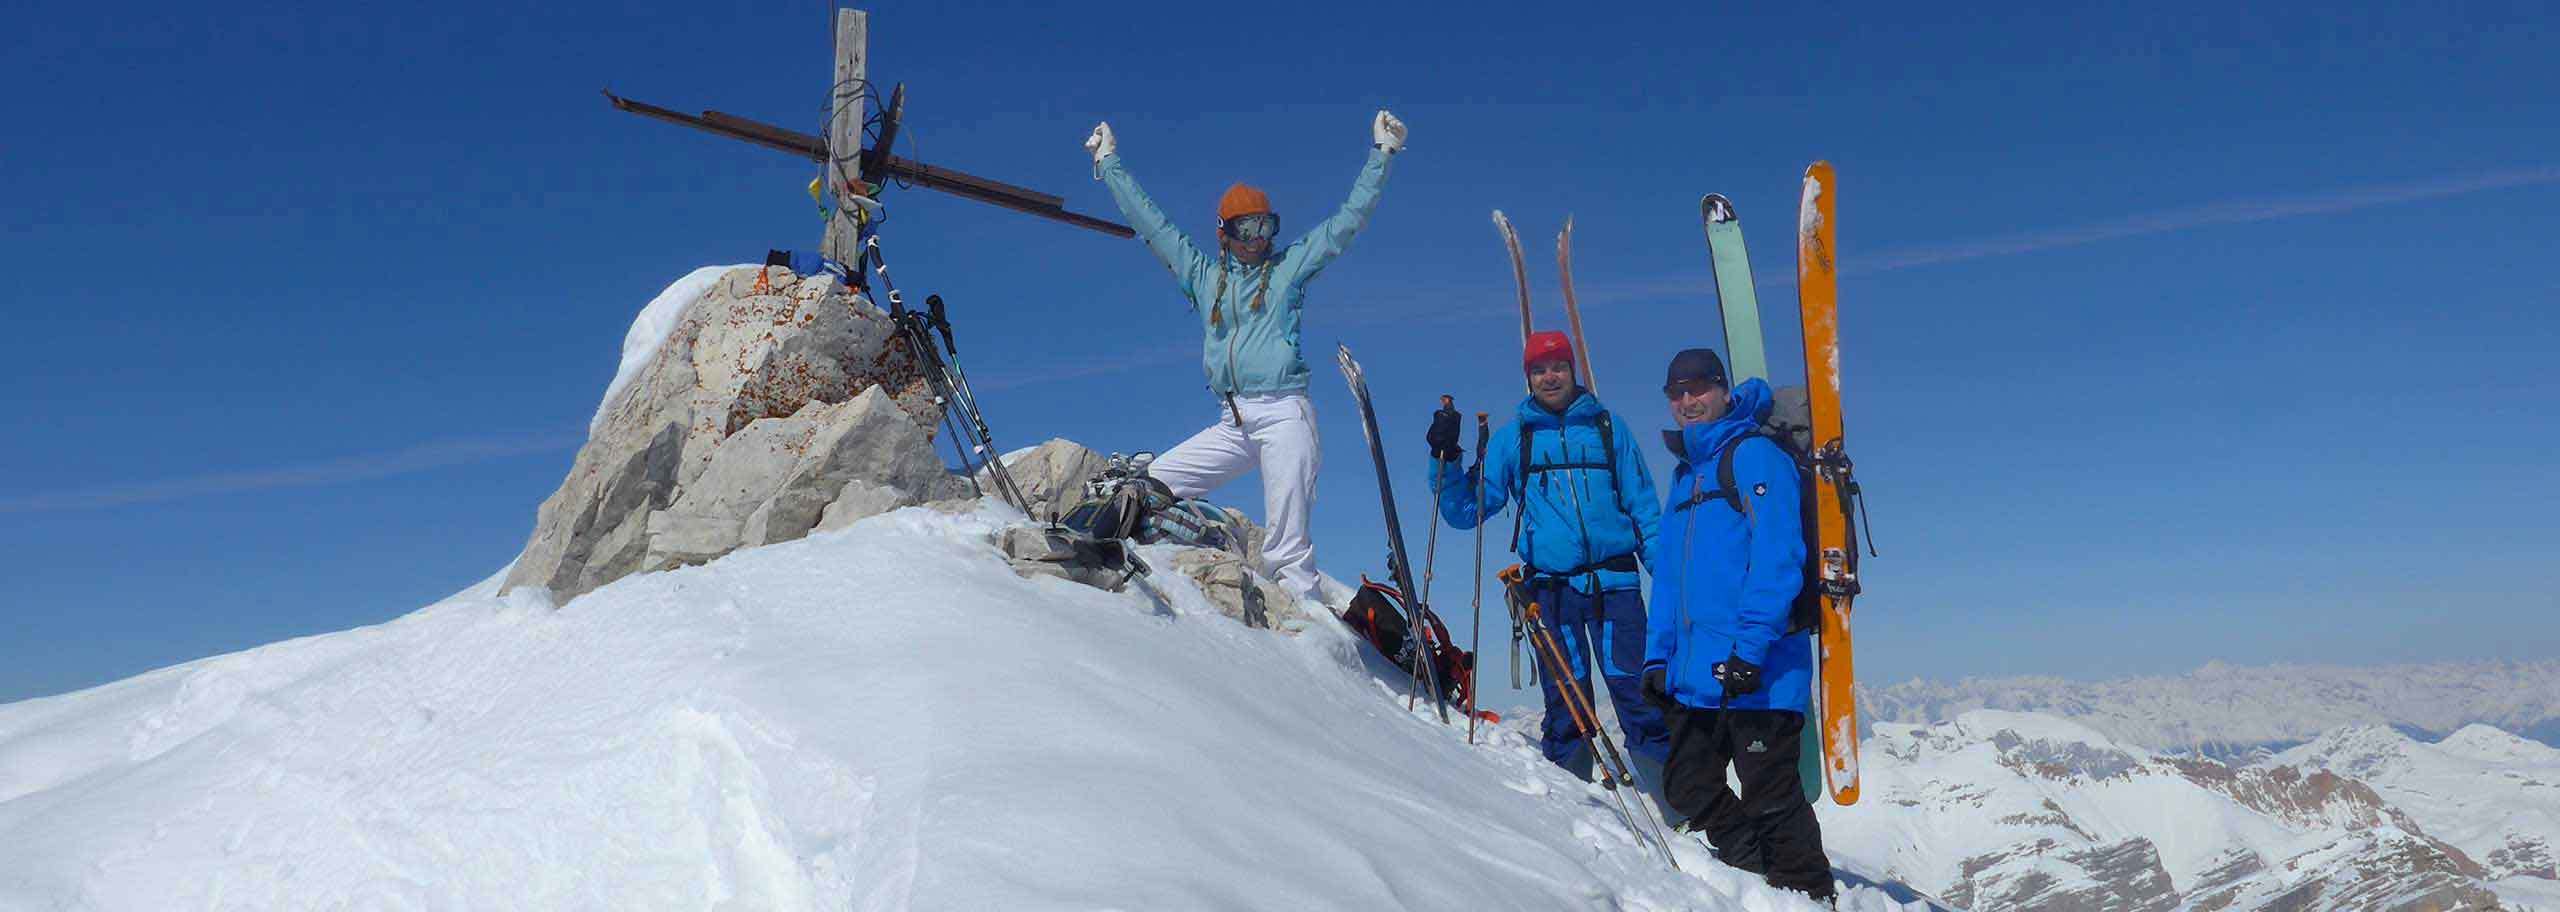 Ski Mountaineering in Ortisei, Ski Touring Trips and Courses